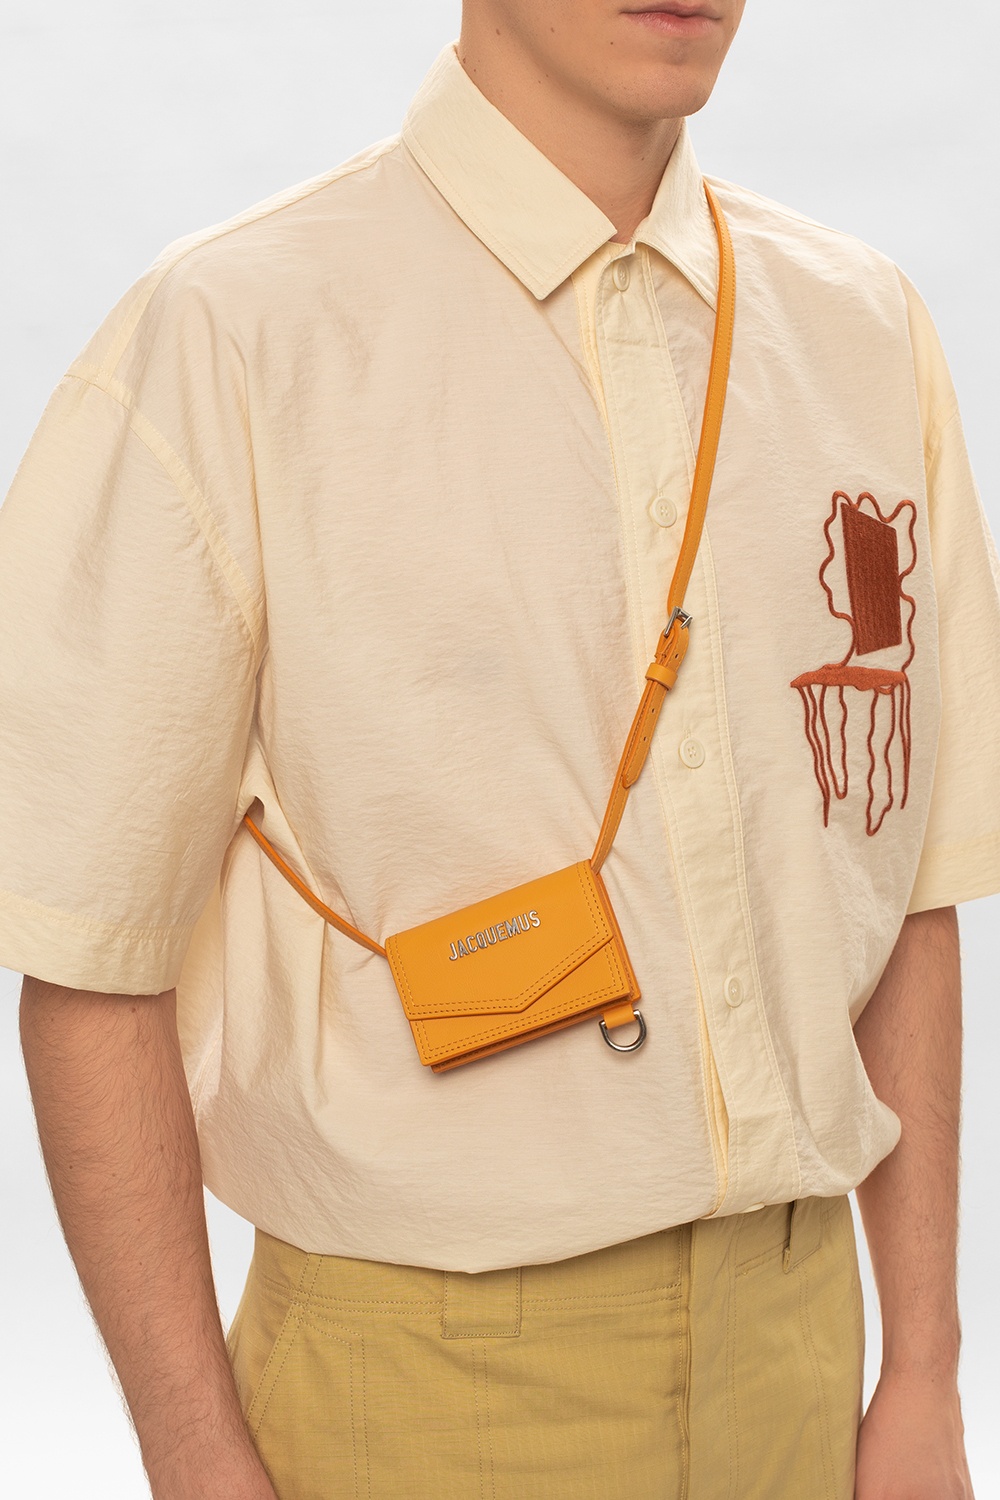 Jacquemus 'Le Porte Azur' shoulder bag, Men's Bags